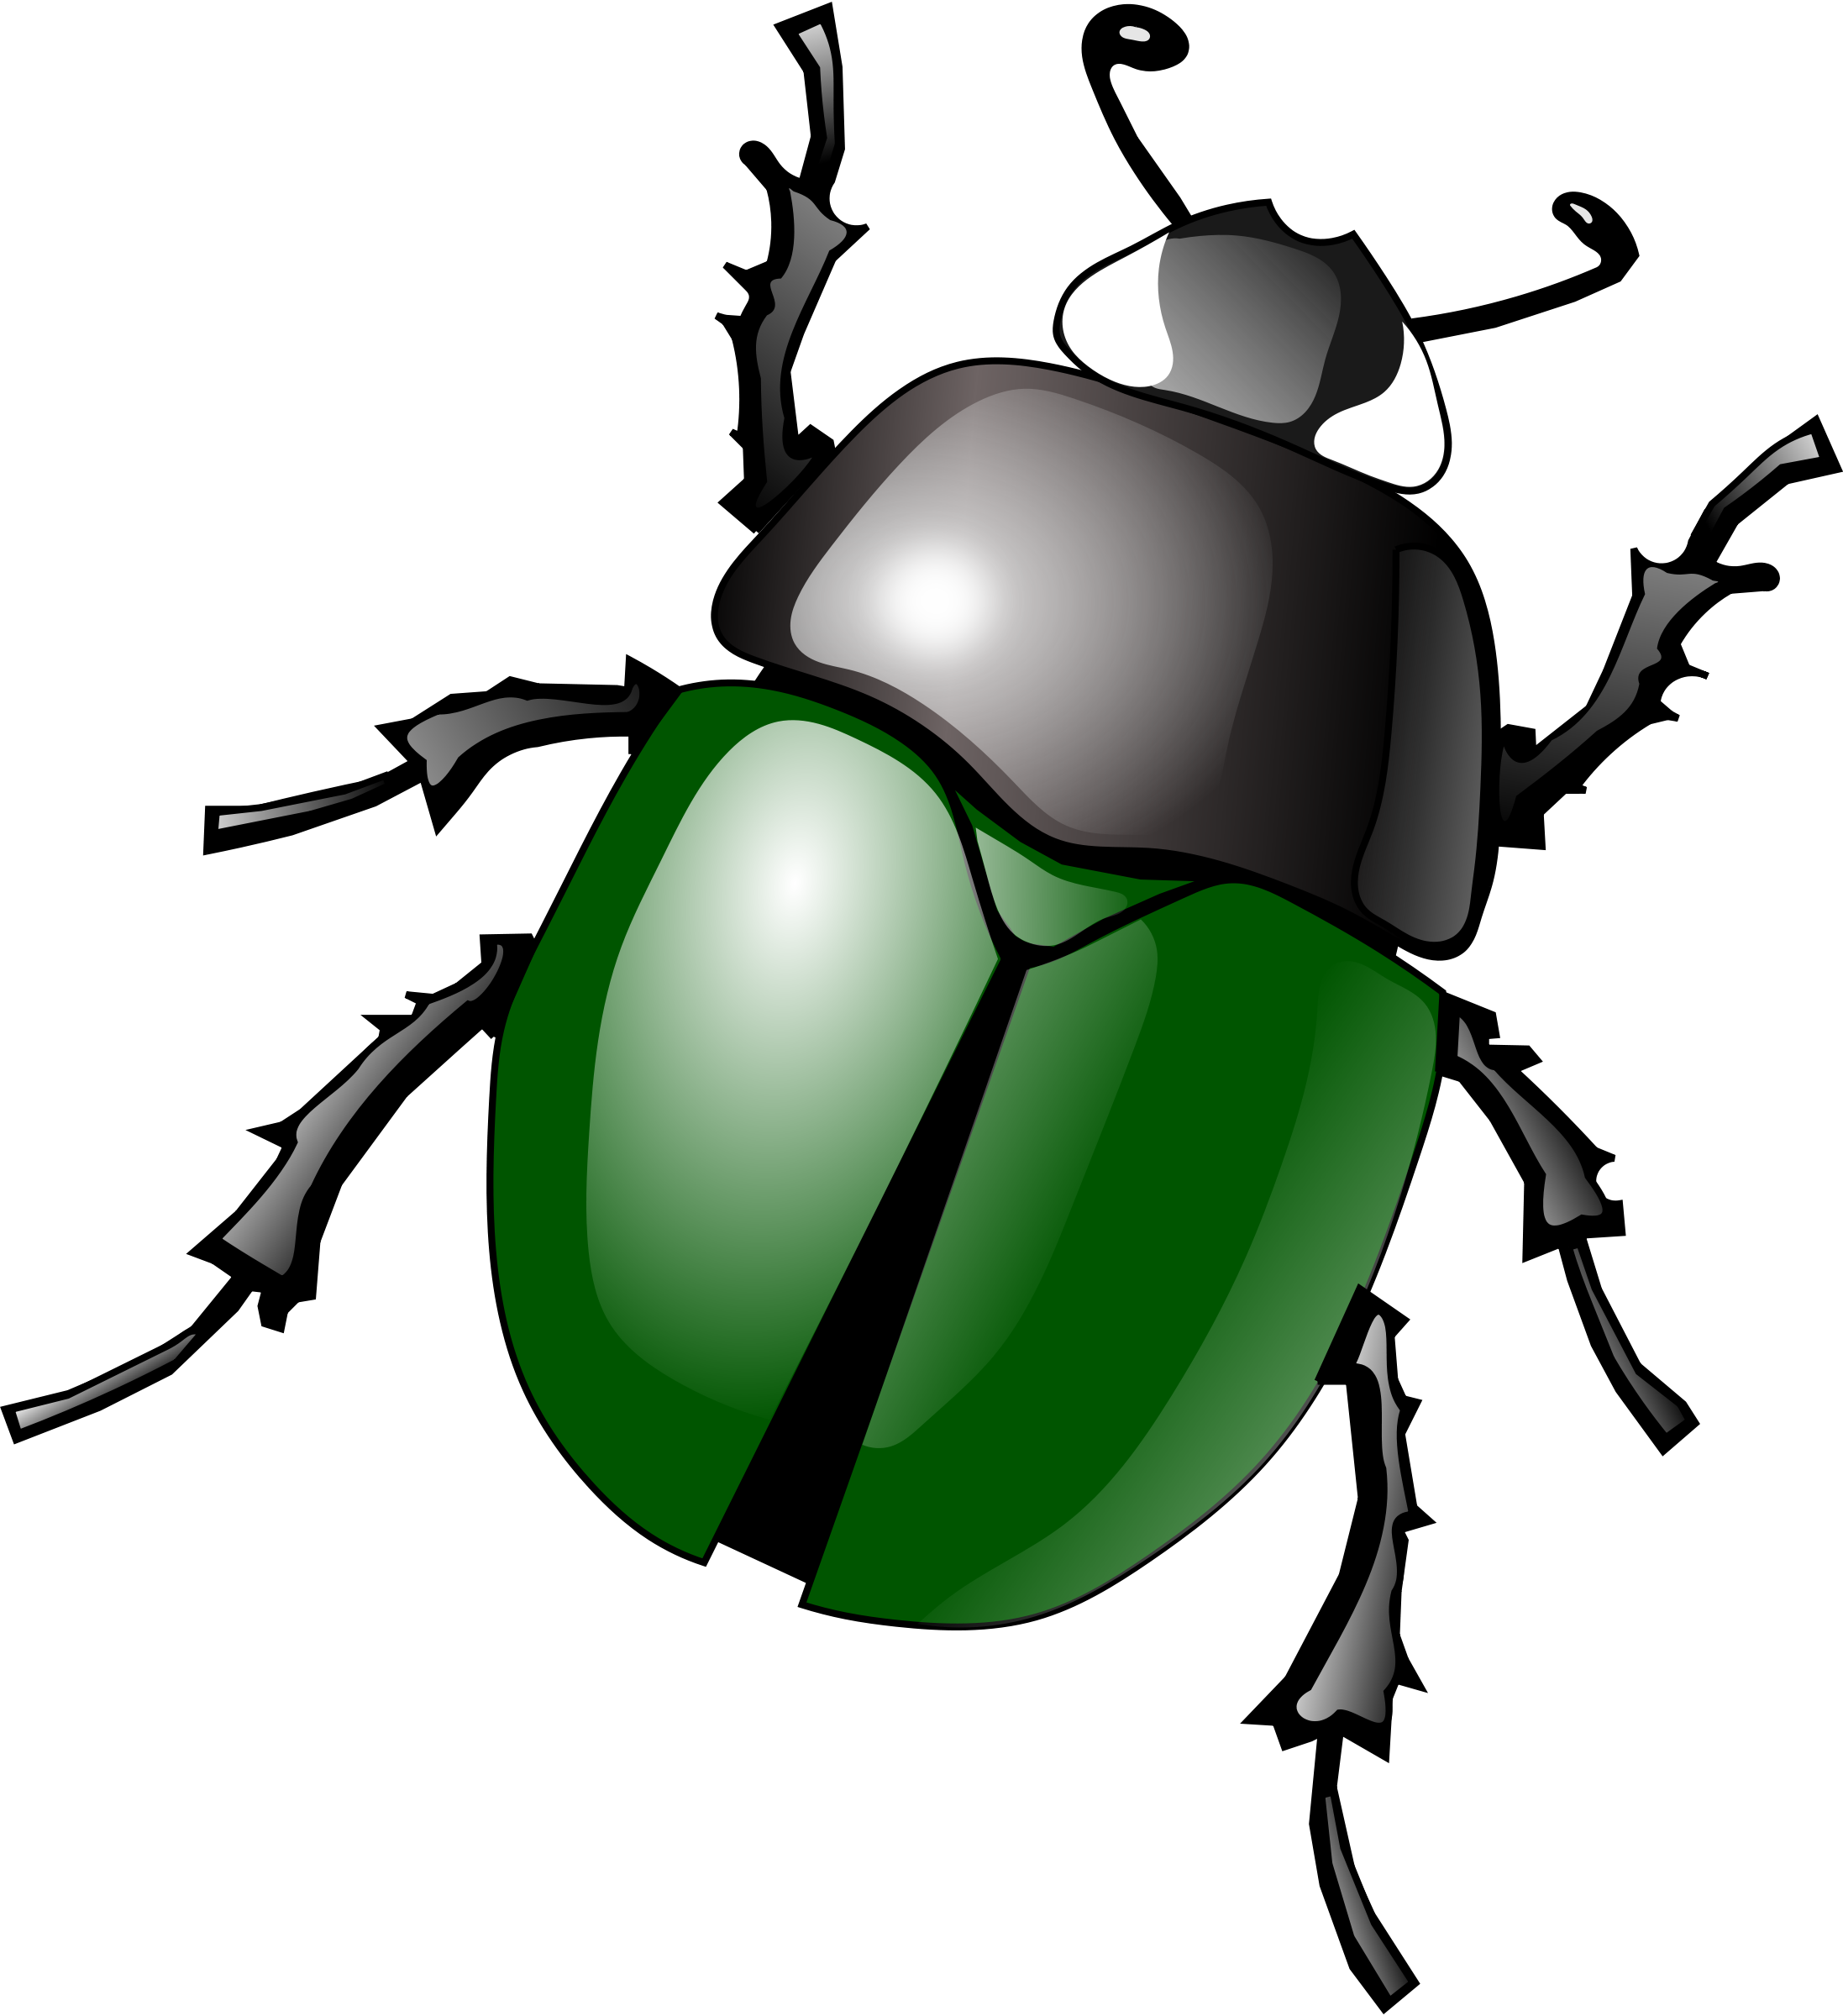 Bugs vectoriels PNG Image de haute qualité